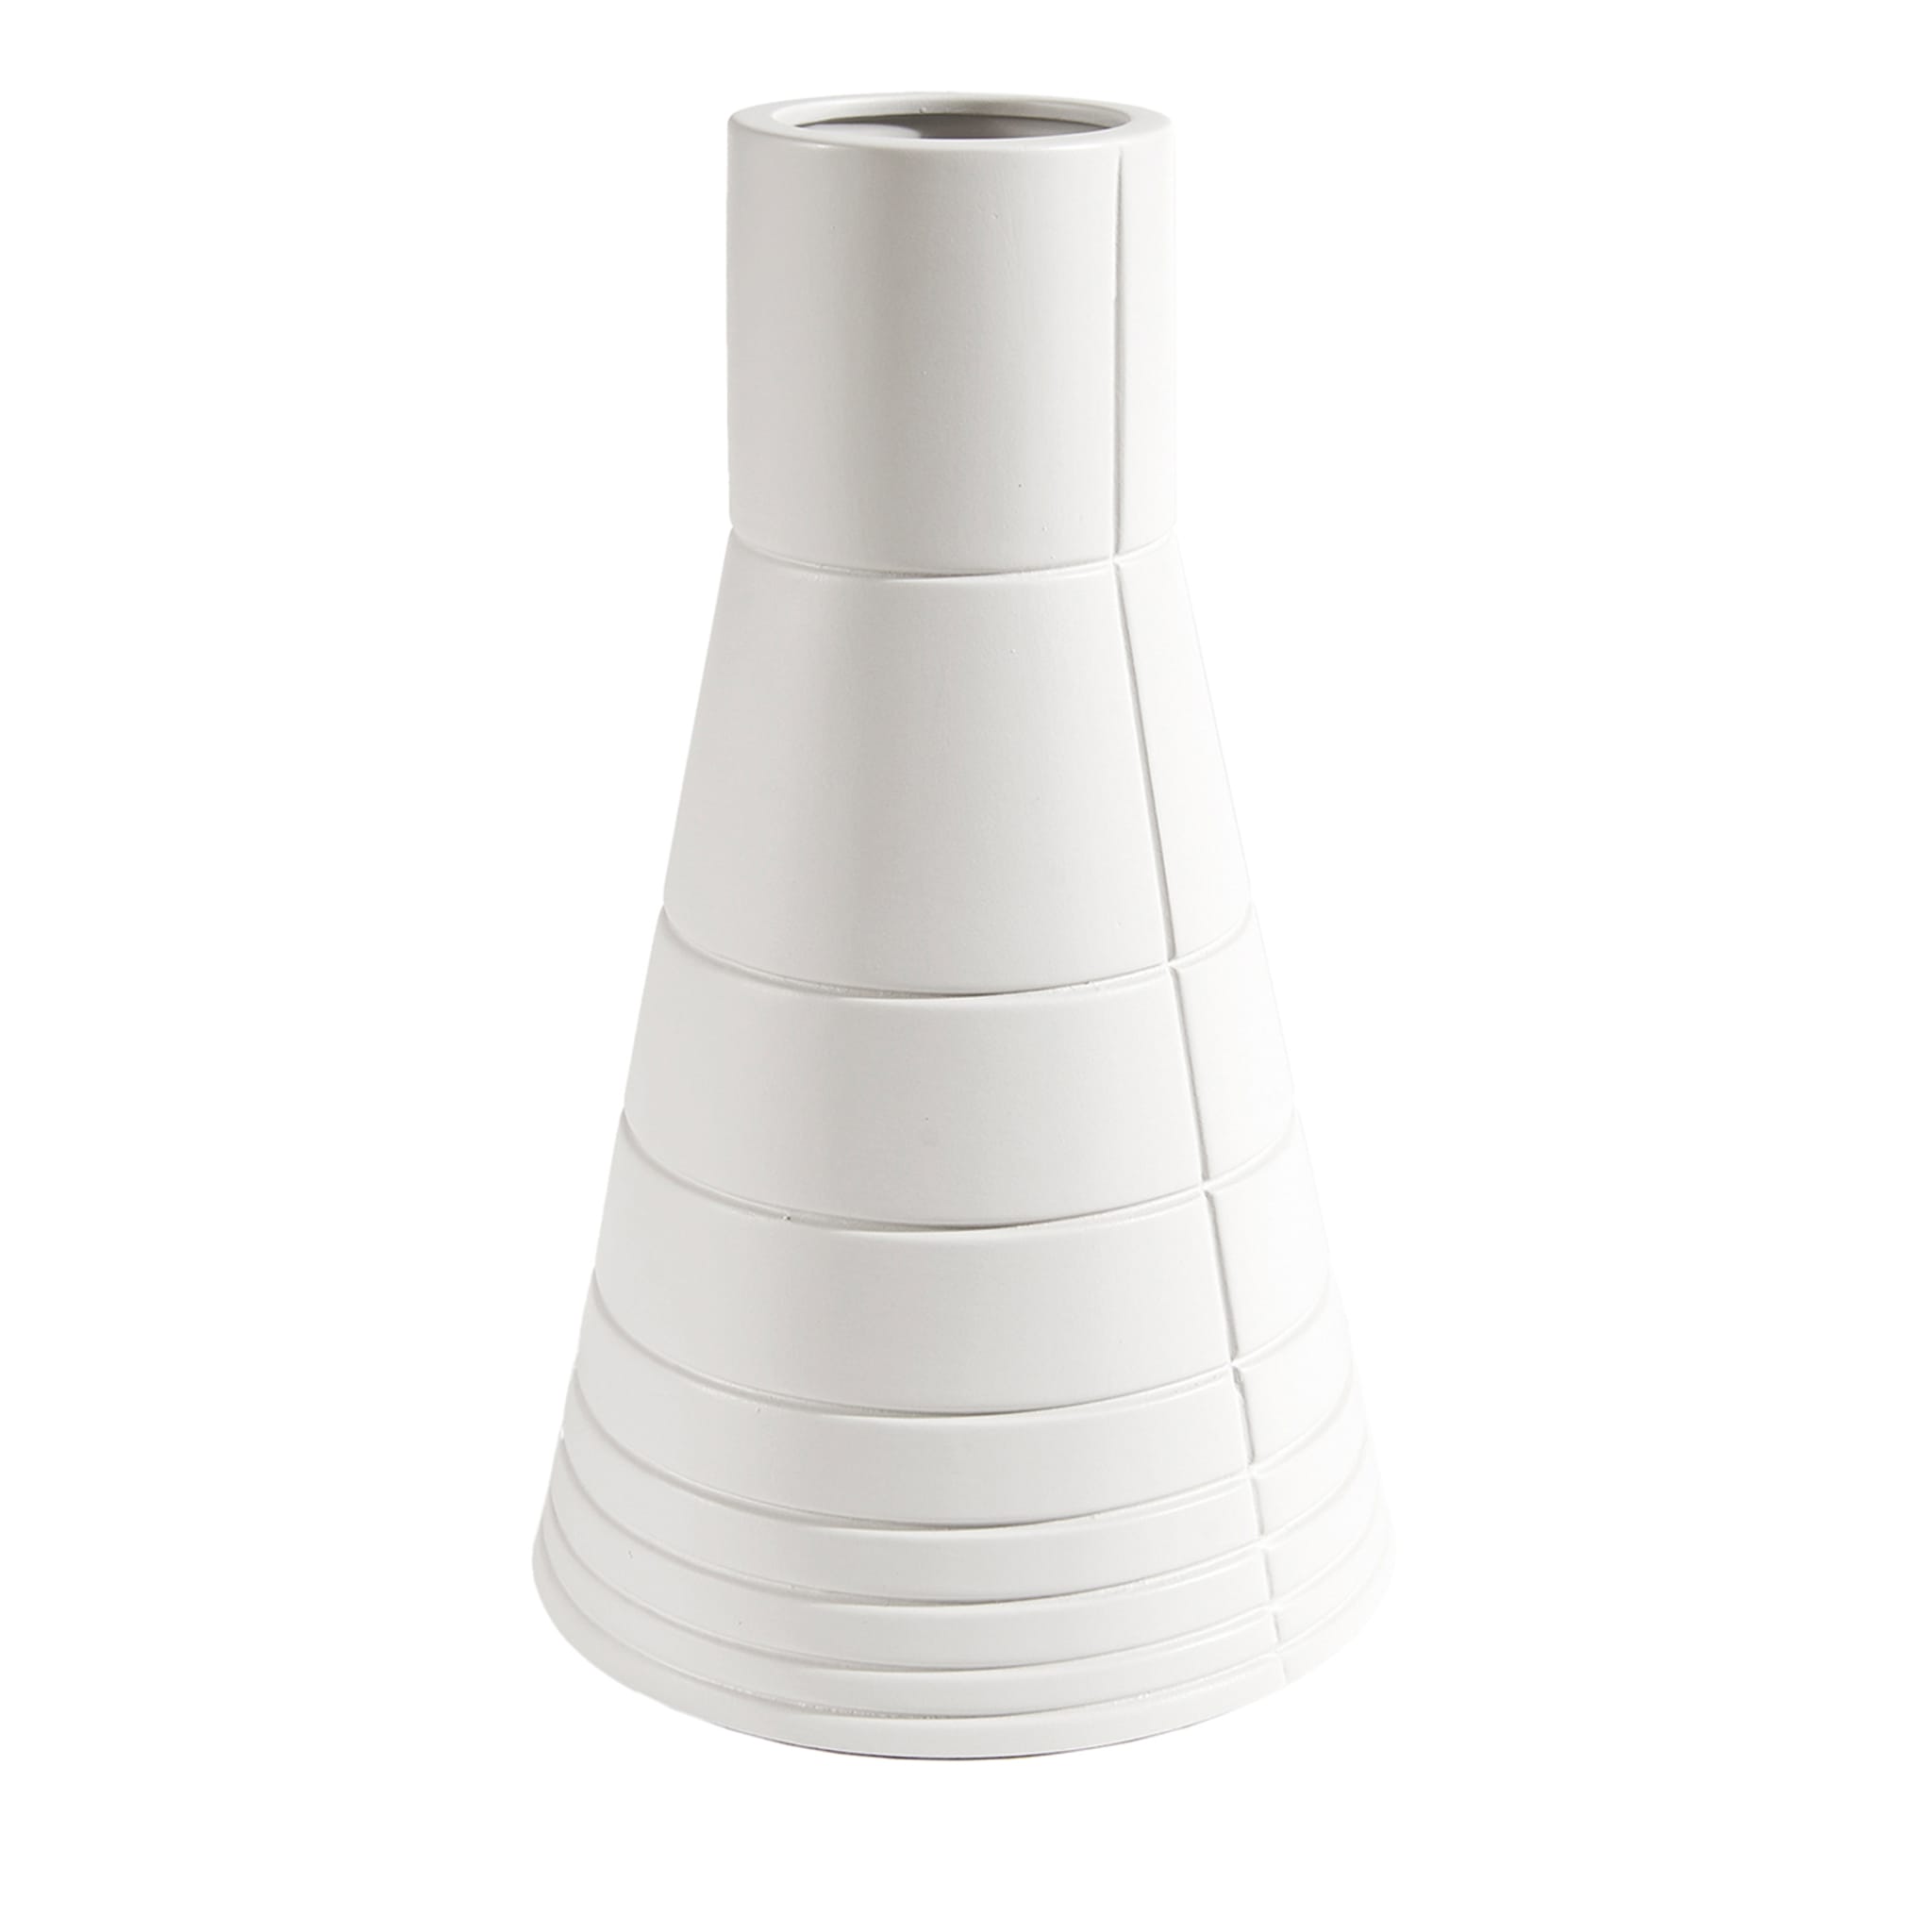 Rikuadra White Ceramic Vase #5 - Main view